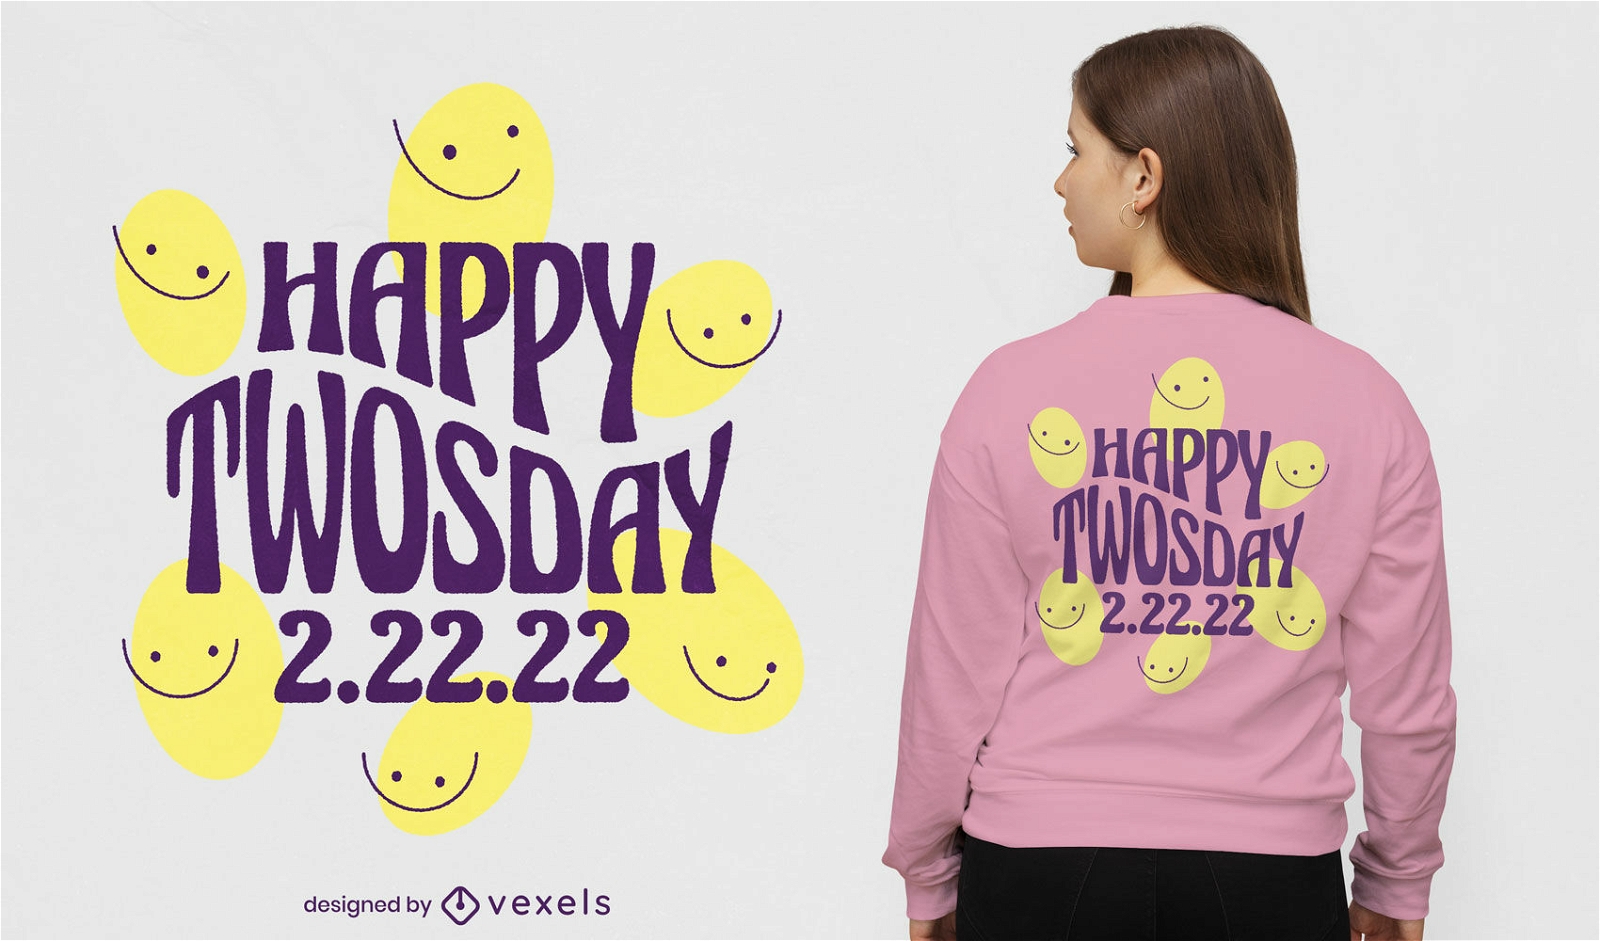 Happy twosday smiley t-shirt design